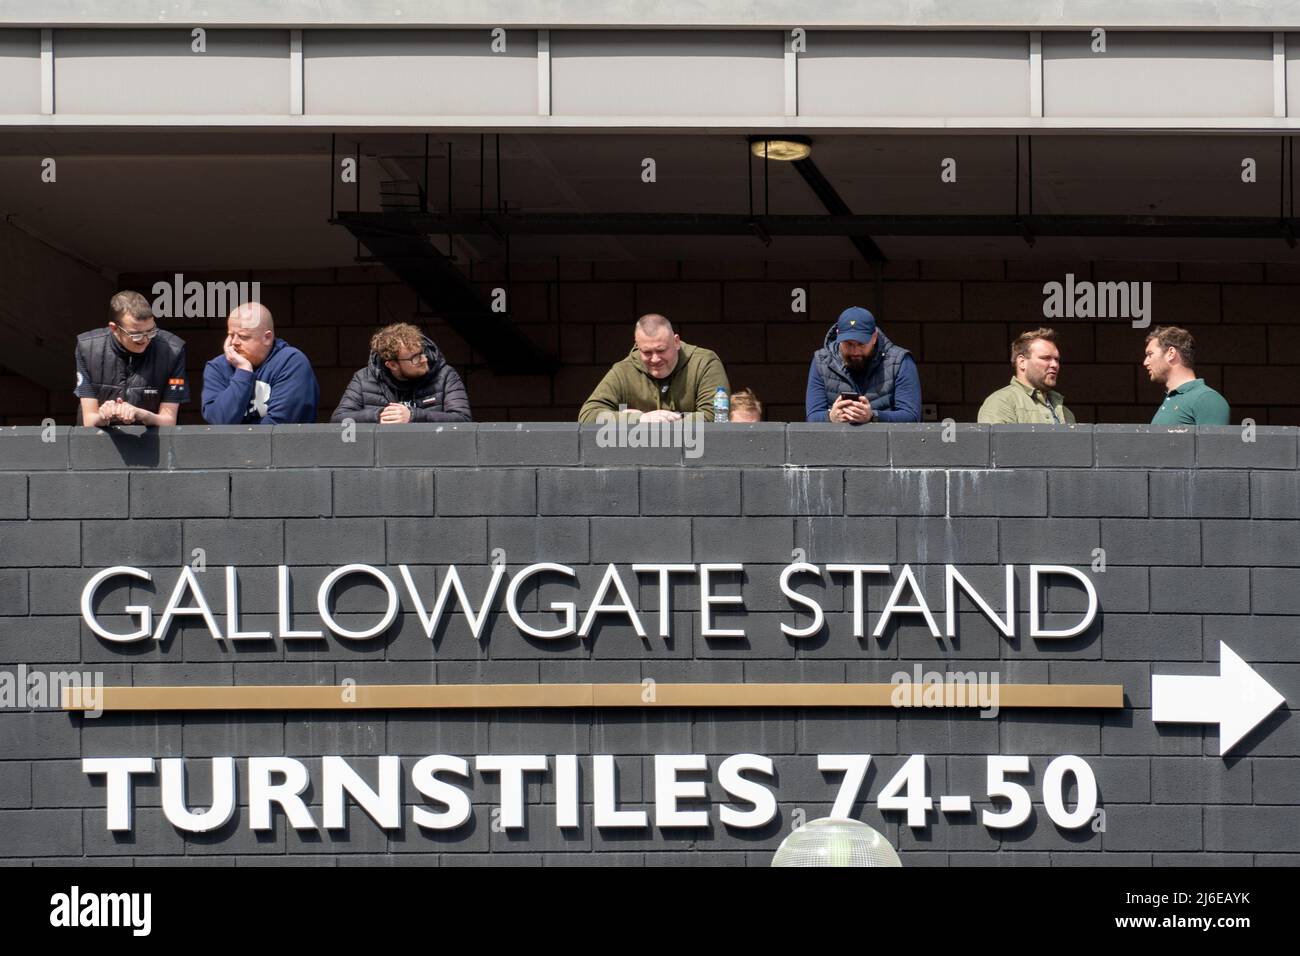 Fußballfans warten auf den Blick von der Rückseite des Gallowgate-Standes des St. James' Park Stadions, dem Heimstadion von Newcastle United, in Newcastle upon Tyne, Großbritannien. Stockfoto